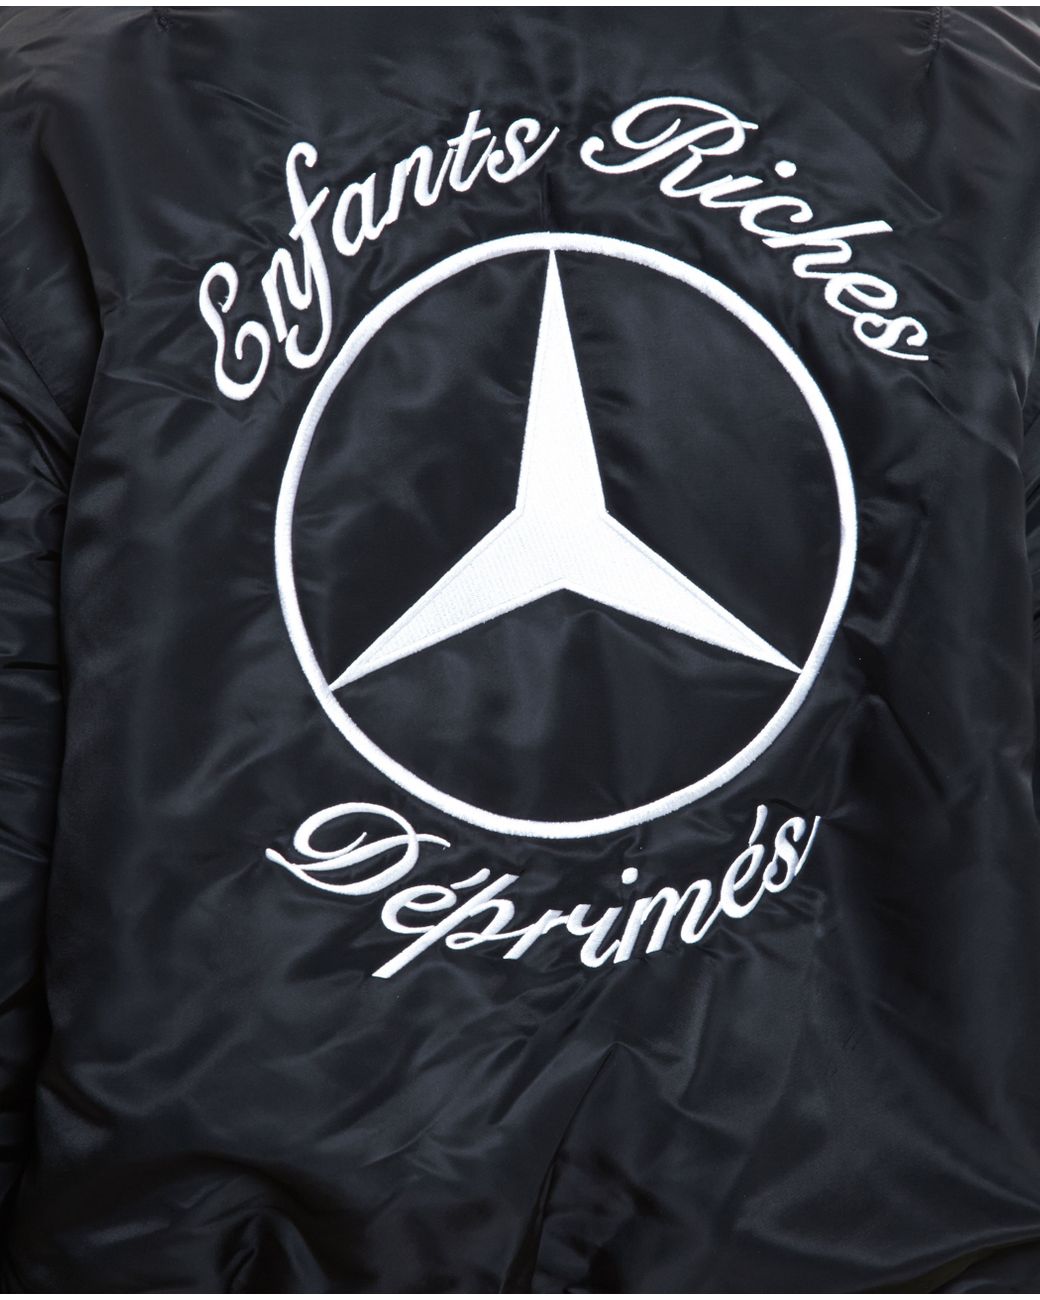 Enfants Riches Deprimes Mercedes Bomber Jacket in Black | Lyst